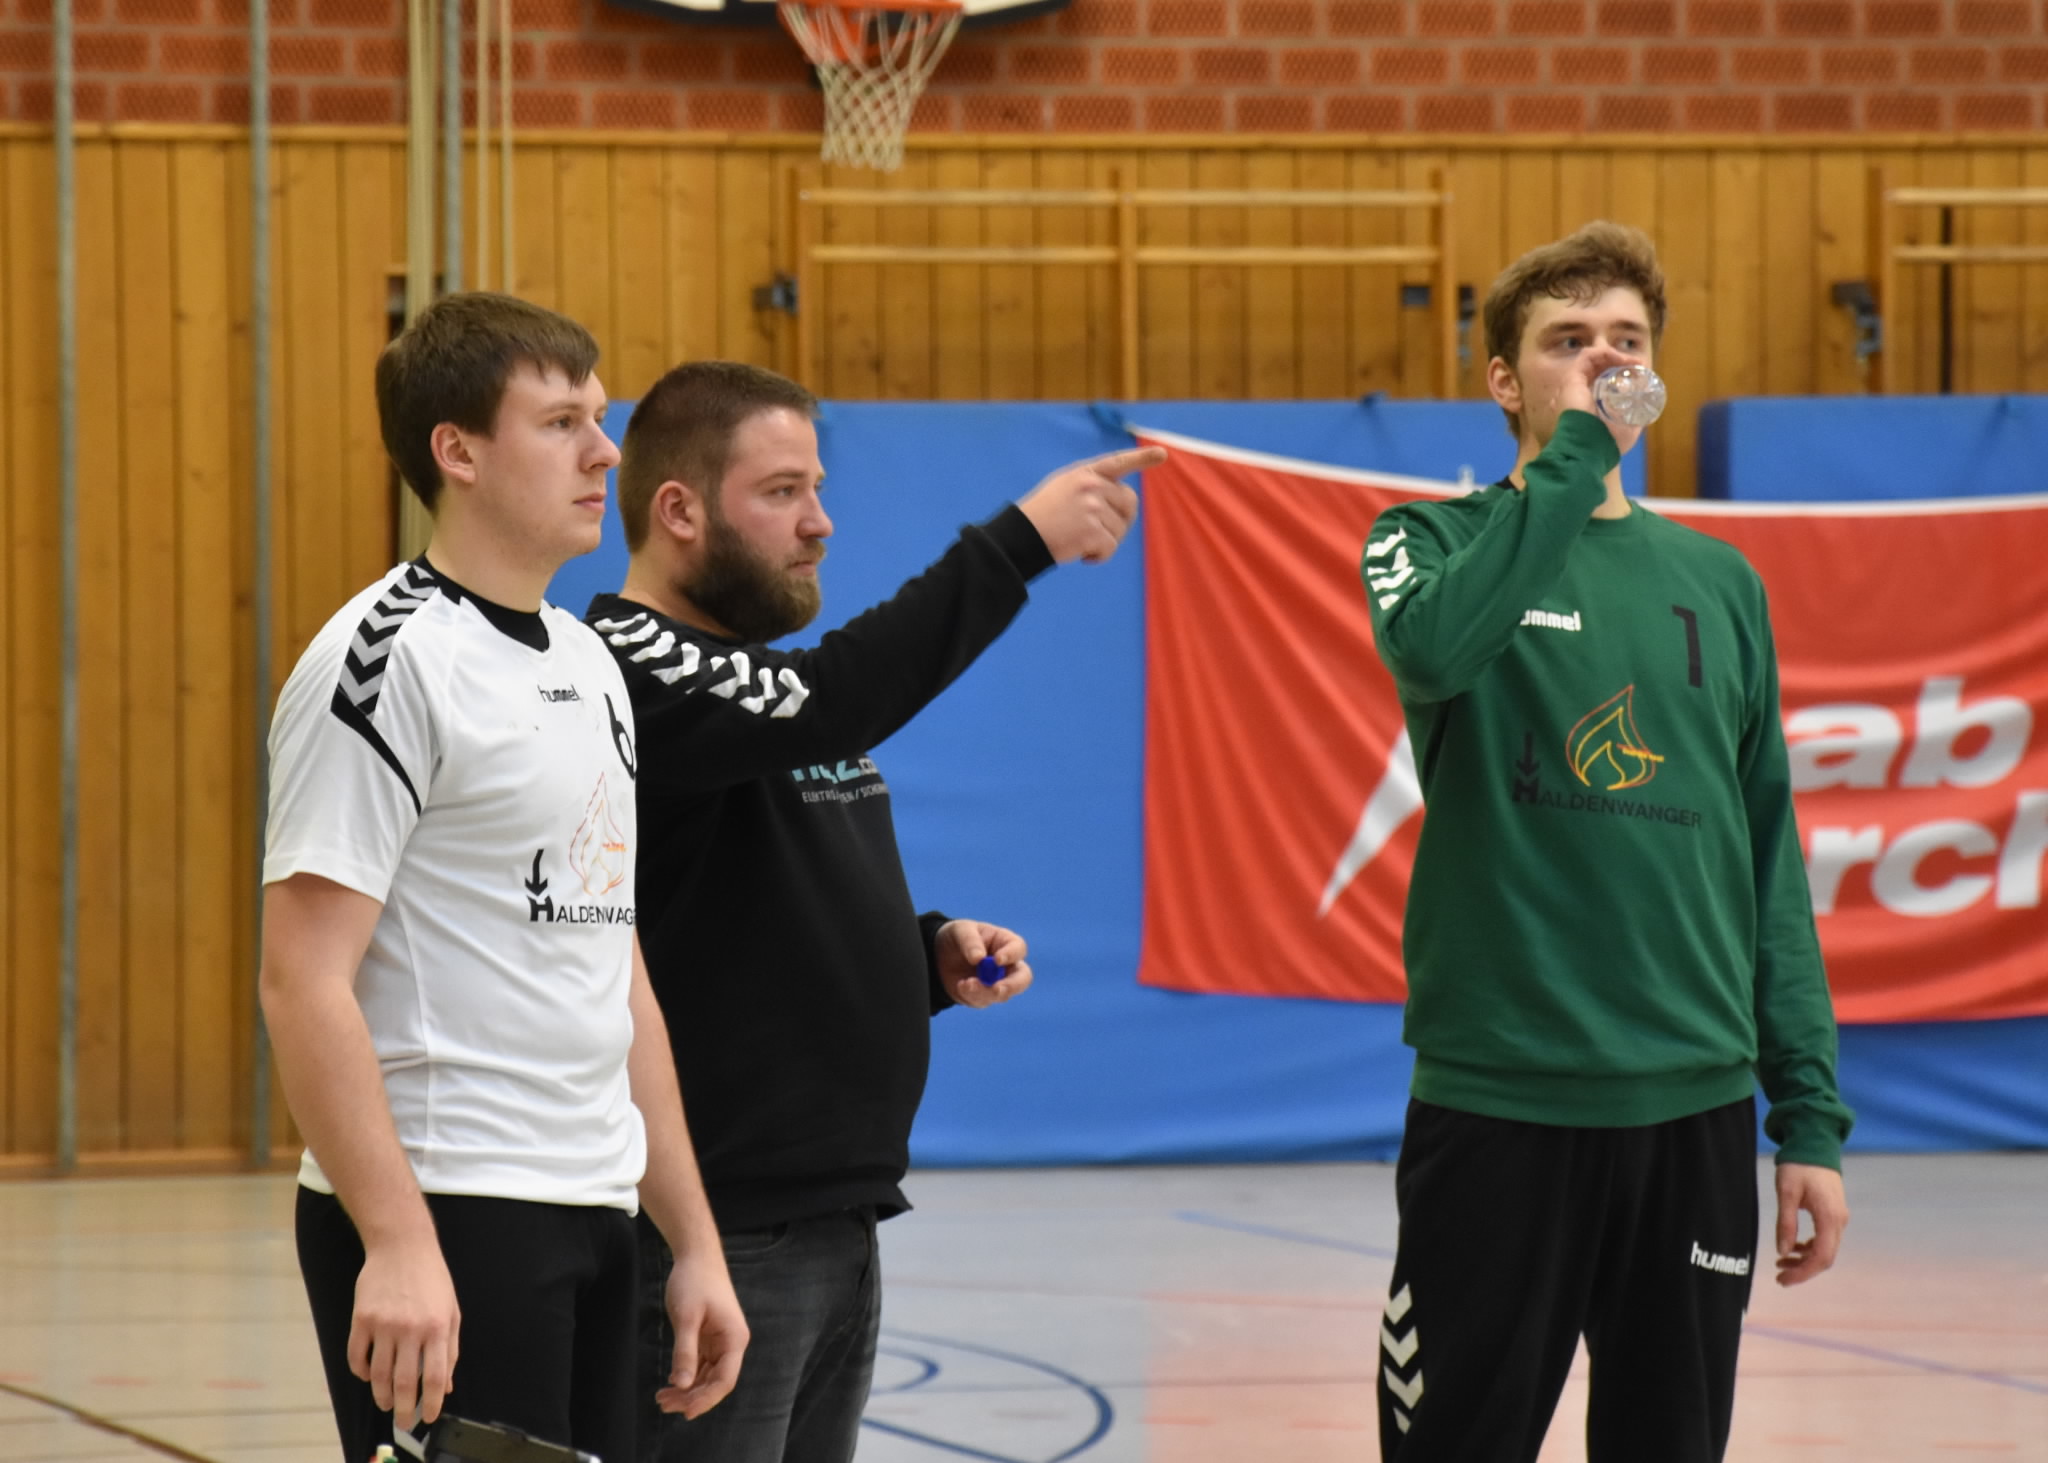 Handballherren mit schweren Heimspiel gg. den TSV Schleißheim